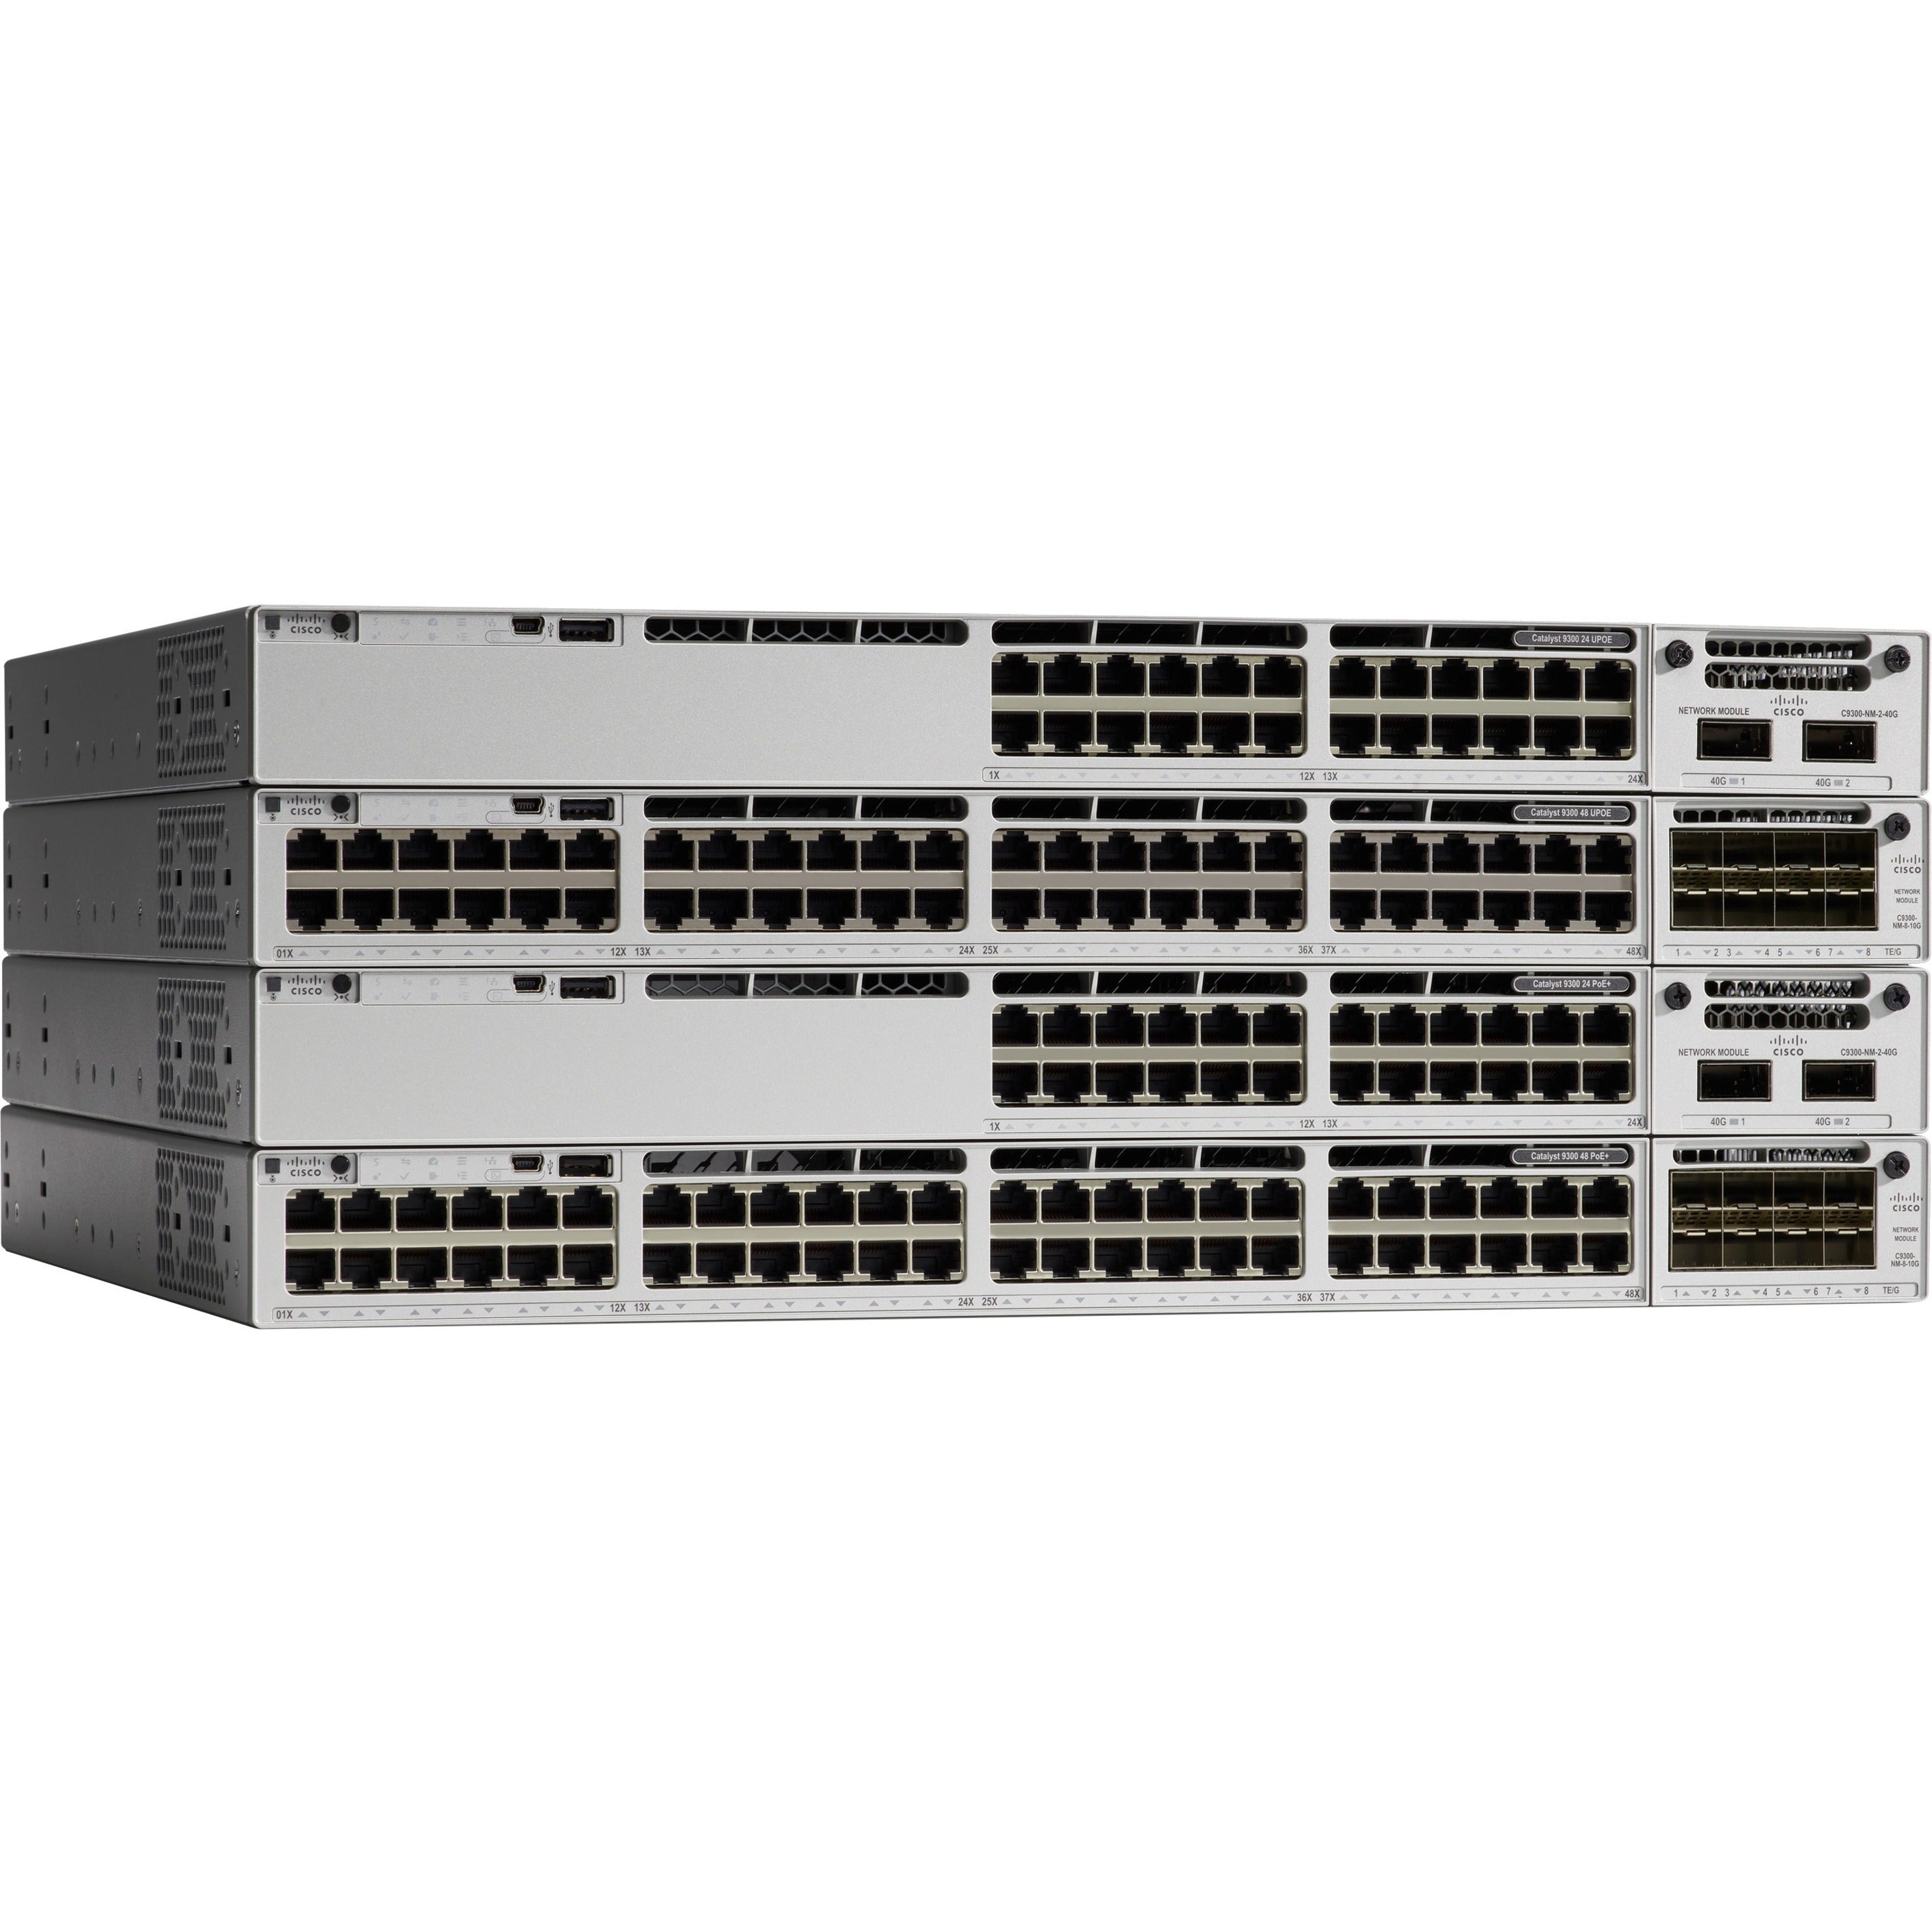 シスコ C9300-24UX-A カタリスト C9300-24UX イーサネット スイッチ、24 x ギガビット イーサネット ネットワーク、管理可能、ラックマウント可能 Cisco (シスコ)